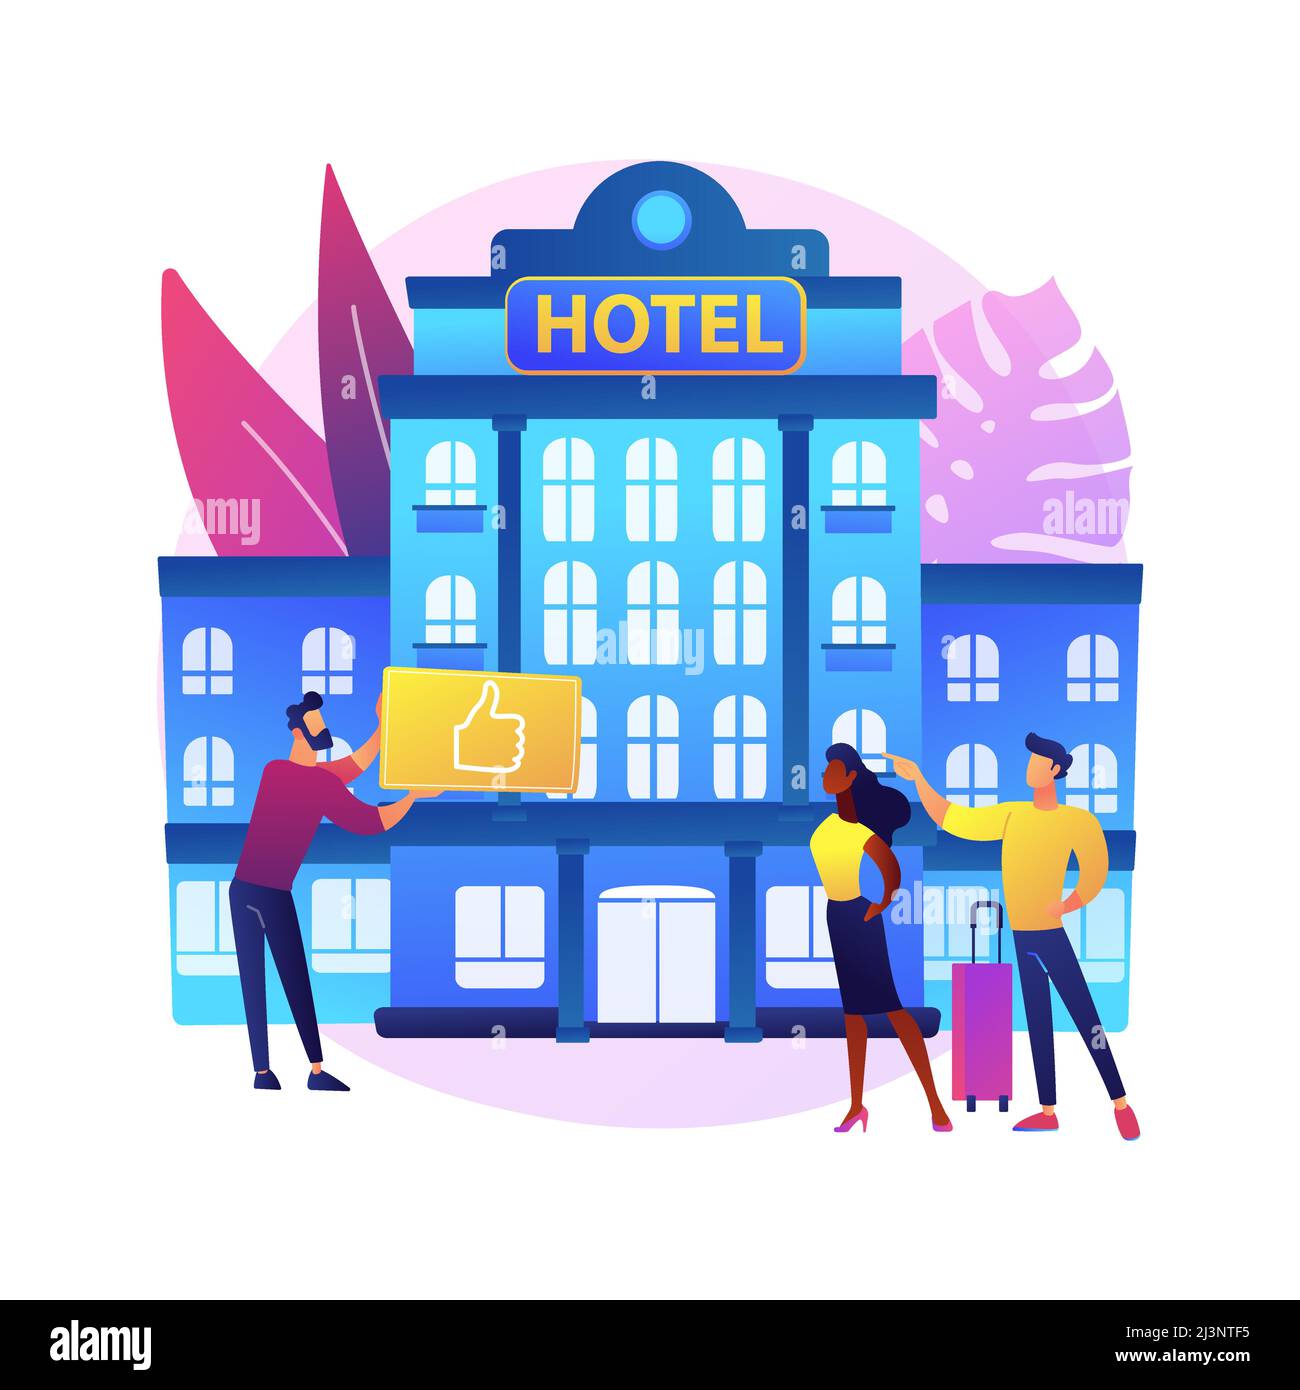 Ilustración vectorial de concepto abstracto de hotel de estilo de vida. Industria de la hospitalidad, resort de vanguardia, reserva en línea, crítica de viajero, desayuno gratuito, wi-f Ilustración del Vector